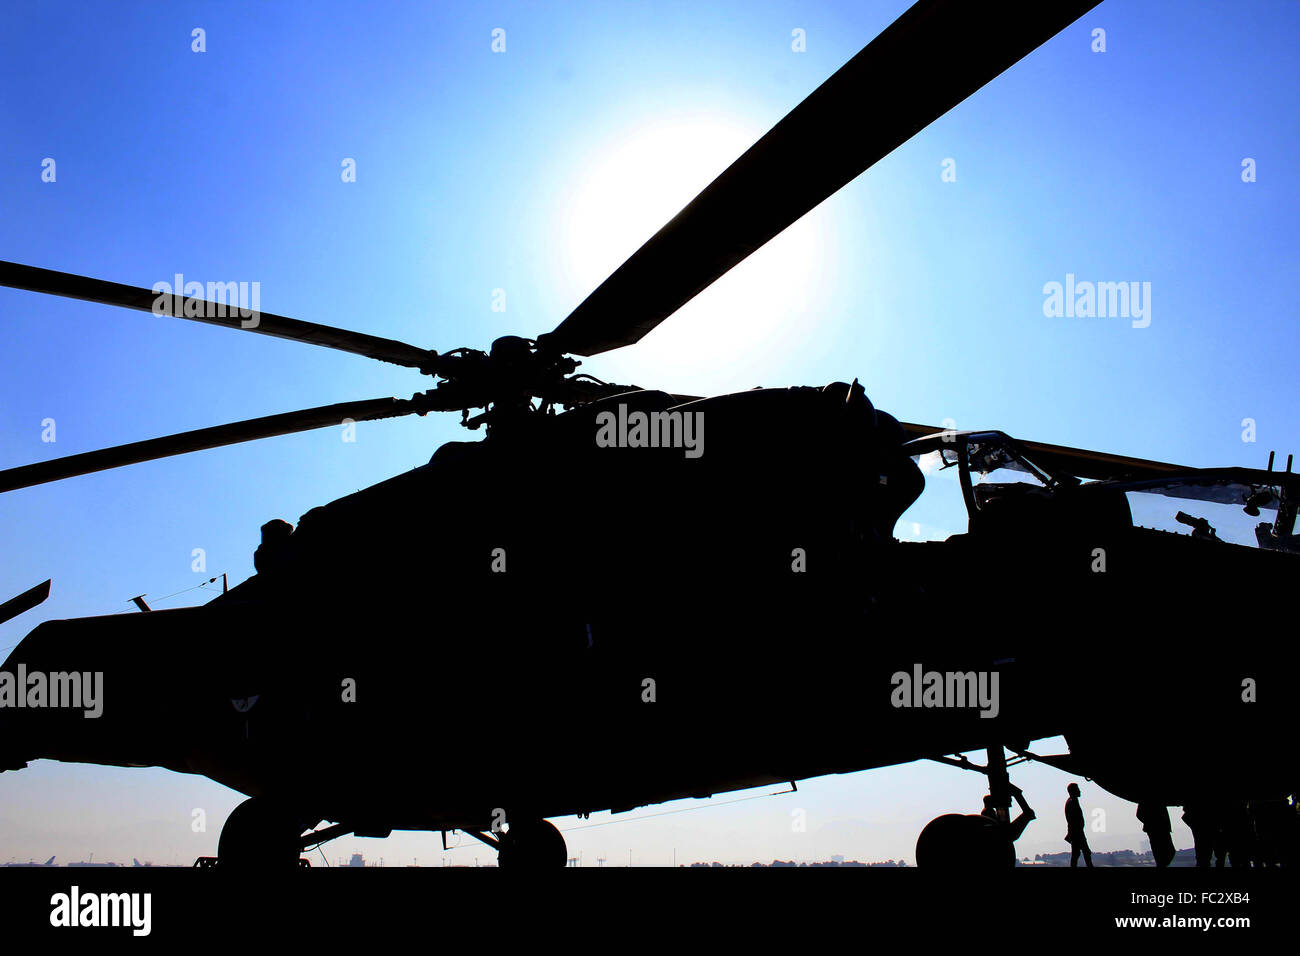 AFGHANISTAN, Kaboul - le 20 janvier : contrôles de l'Armée nationale afghane le Mi- 25 Hélicoptère à l'aéroport international d'Hamid Karzaï, le 20 janvier 2016. Banque D'Images